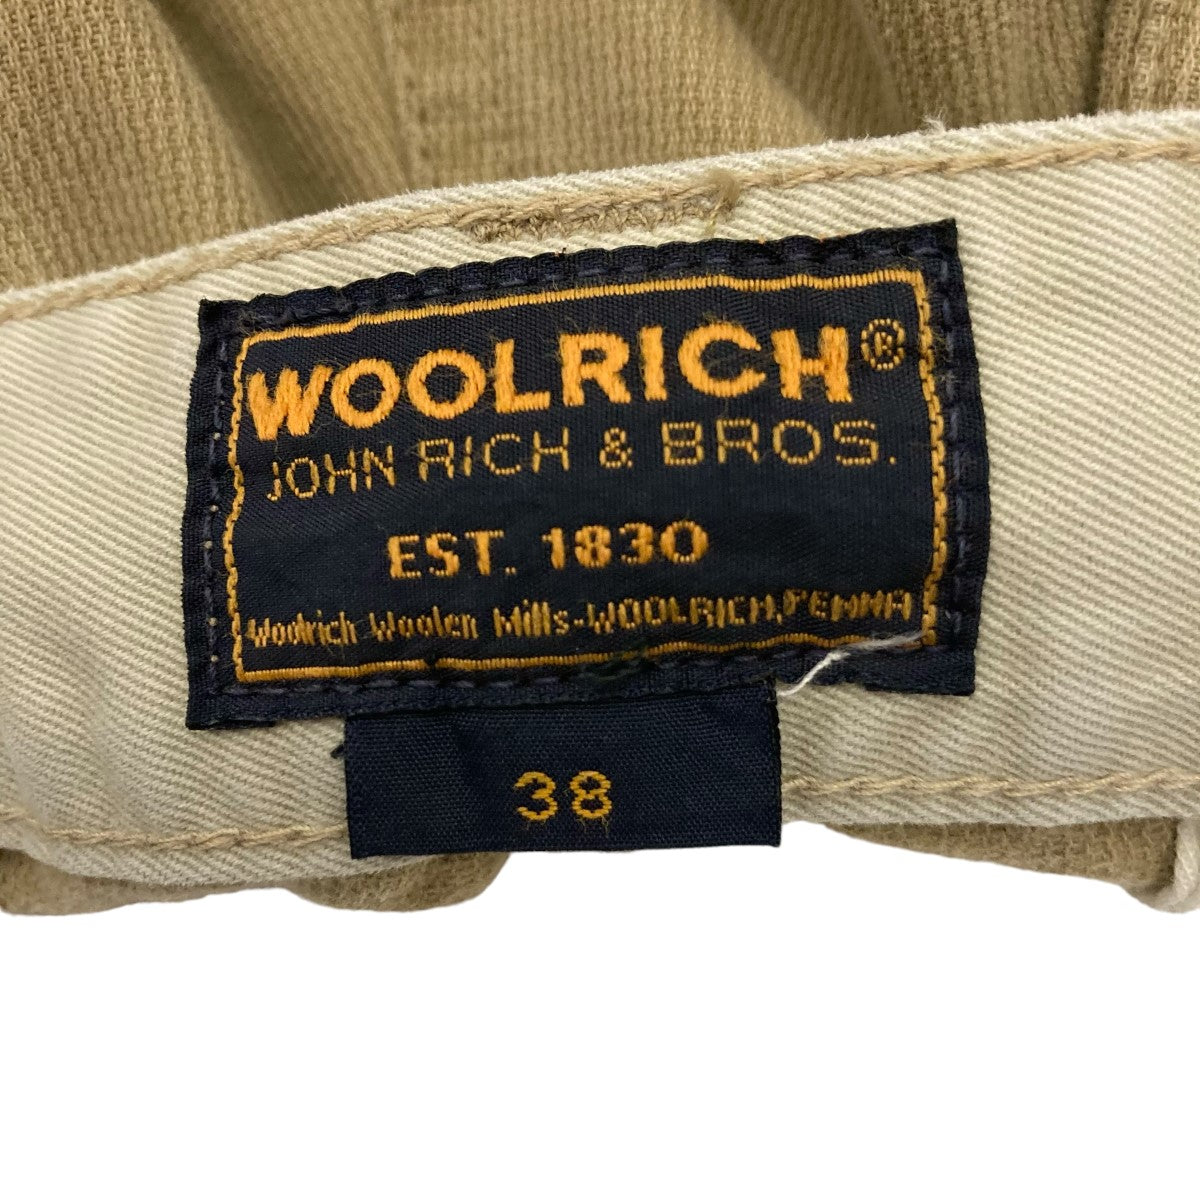 新座店イタリア製 WOOLRICH WOOLEN MILLS ウールリッチ ウーレンミルズ ショールカラー ジャケット メルトン 黒 size.S Sサイズ